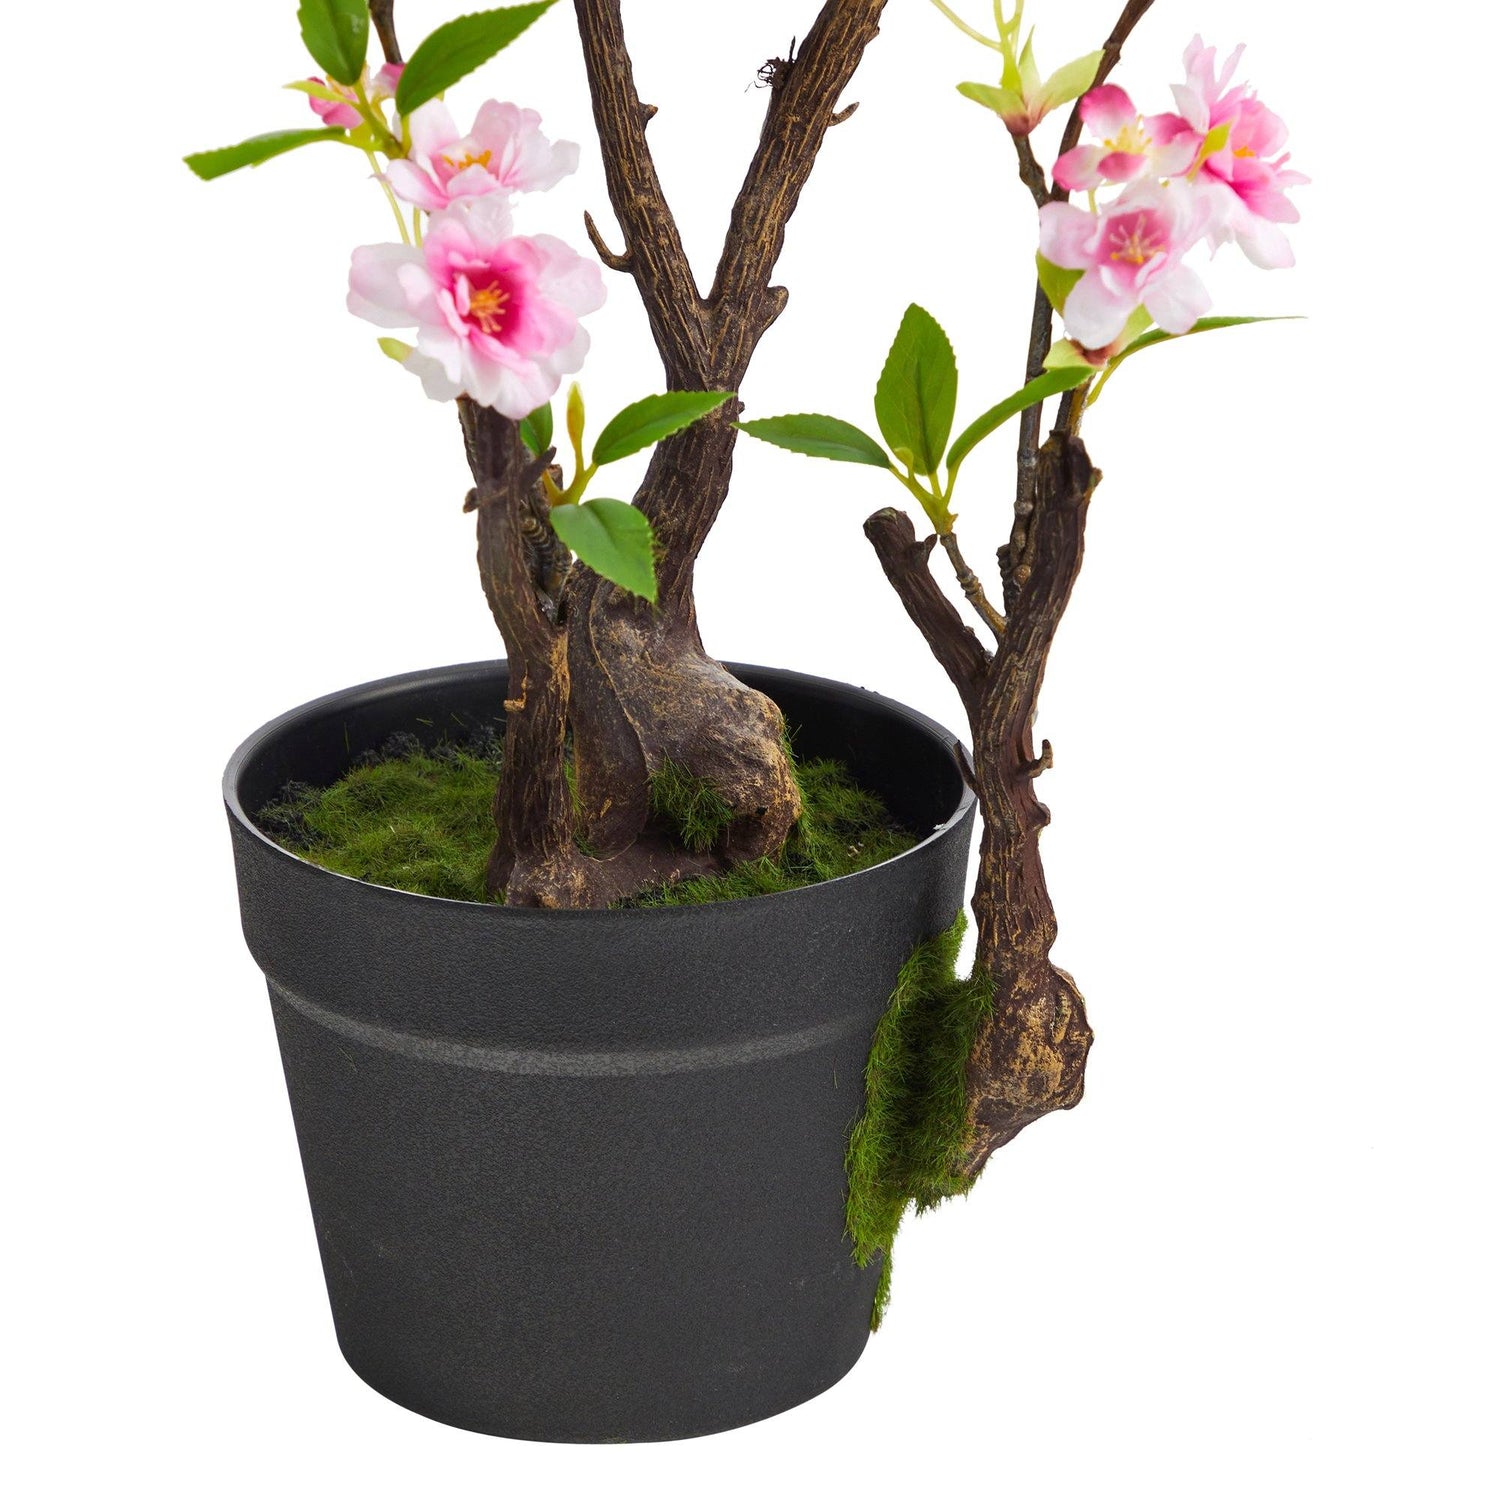 2.5’ Cherry Blossom Artificial Plant